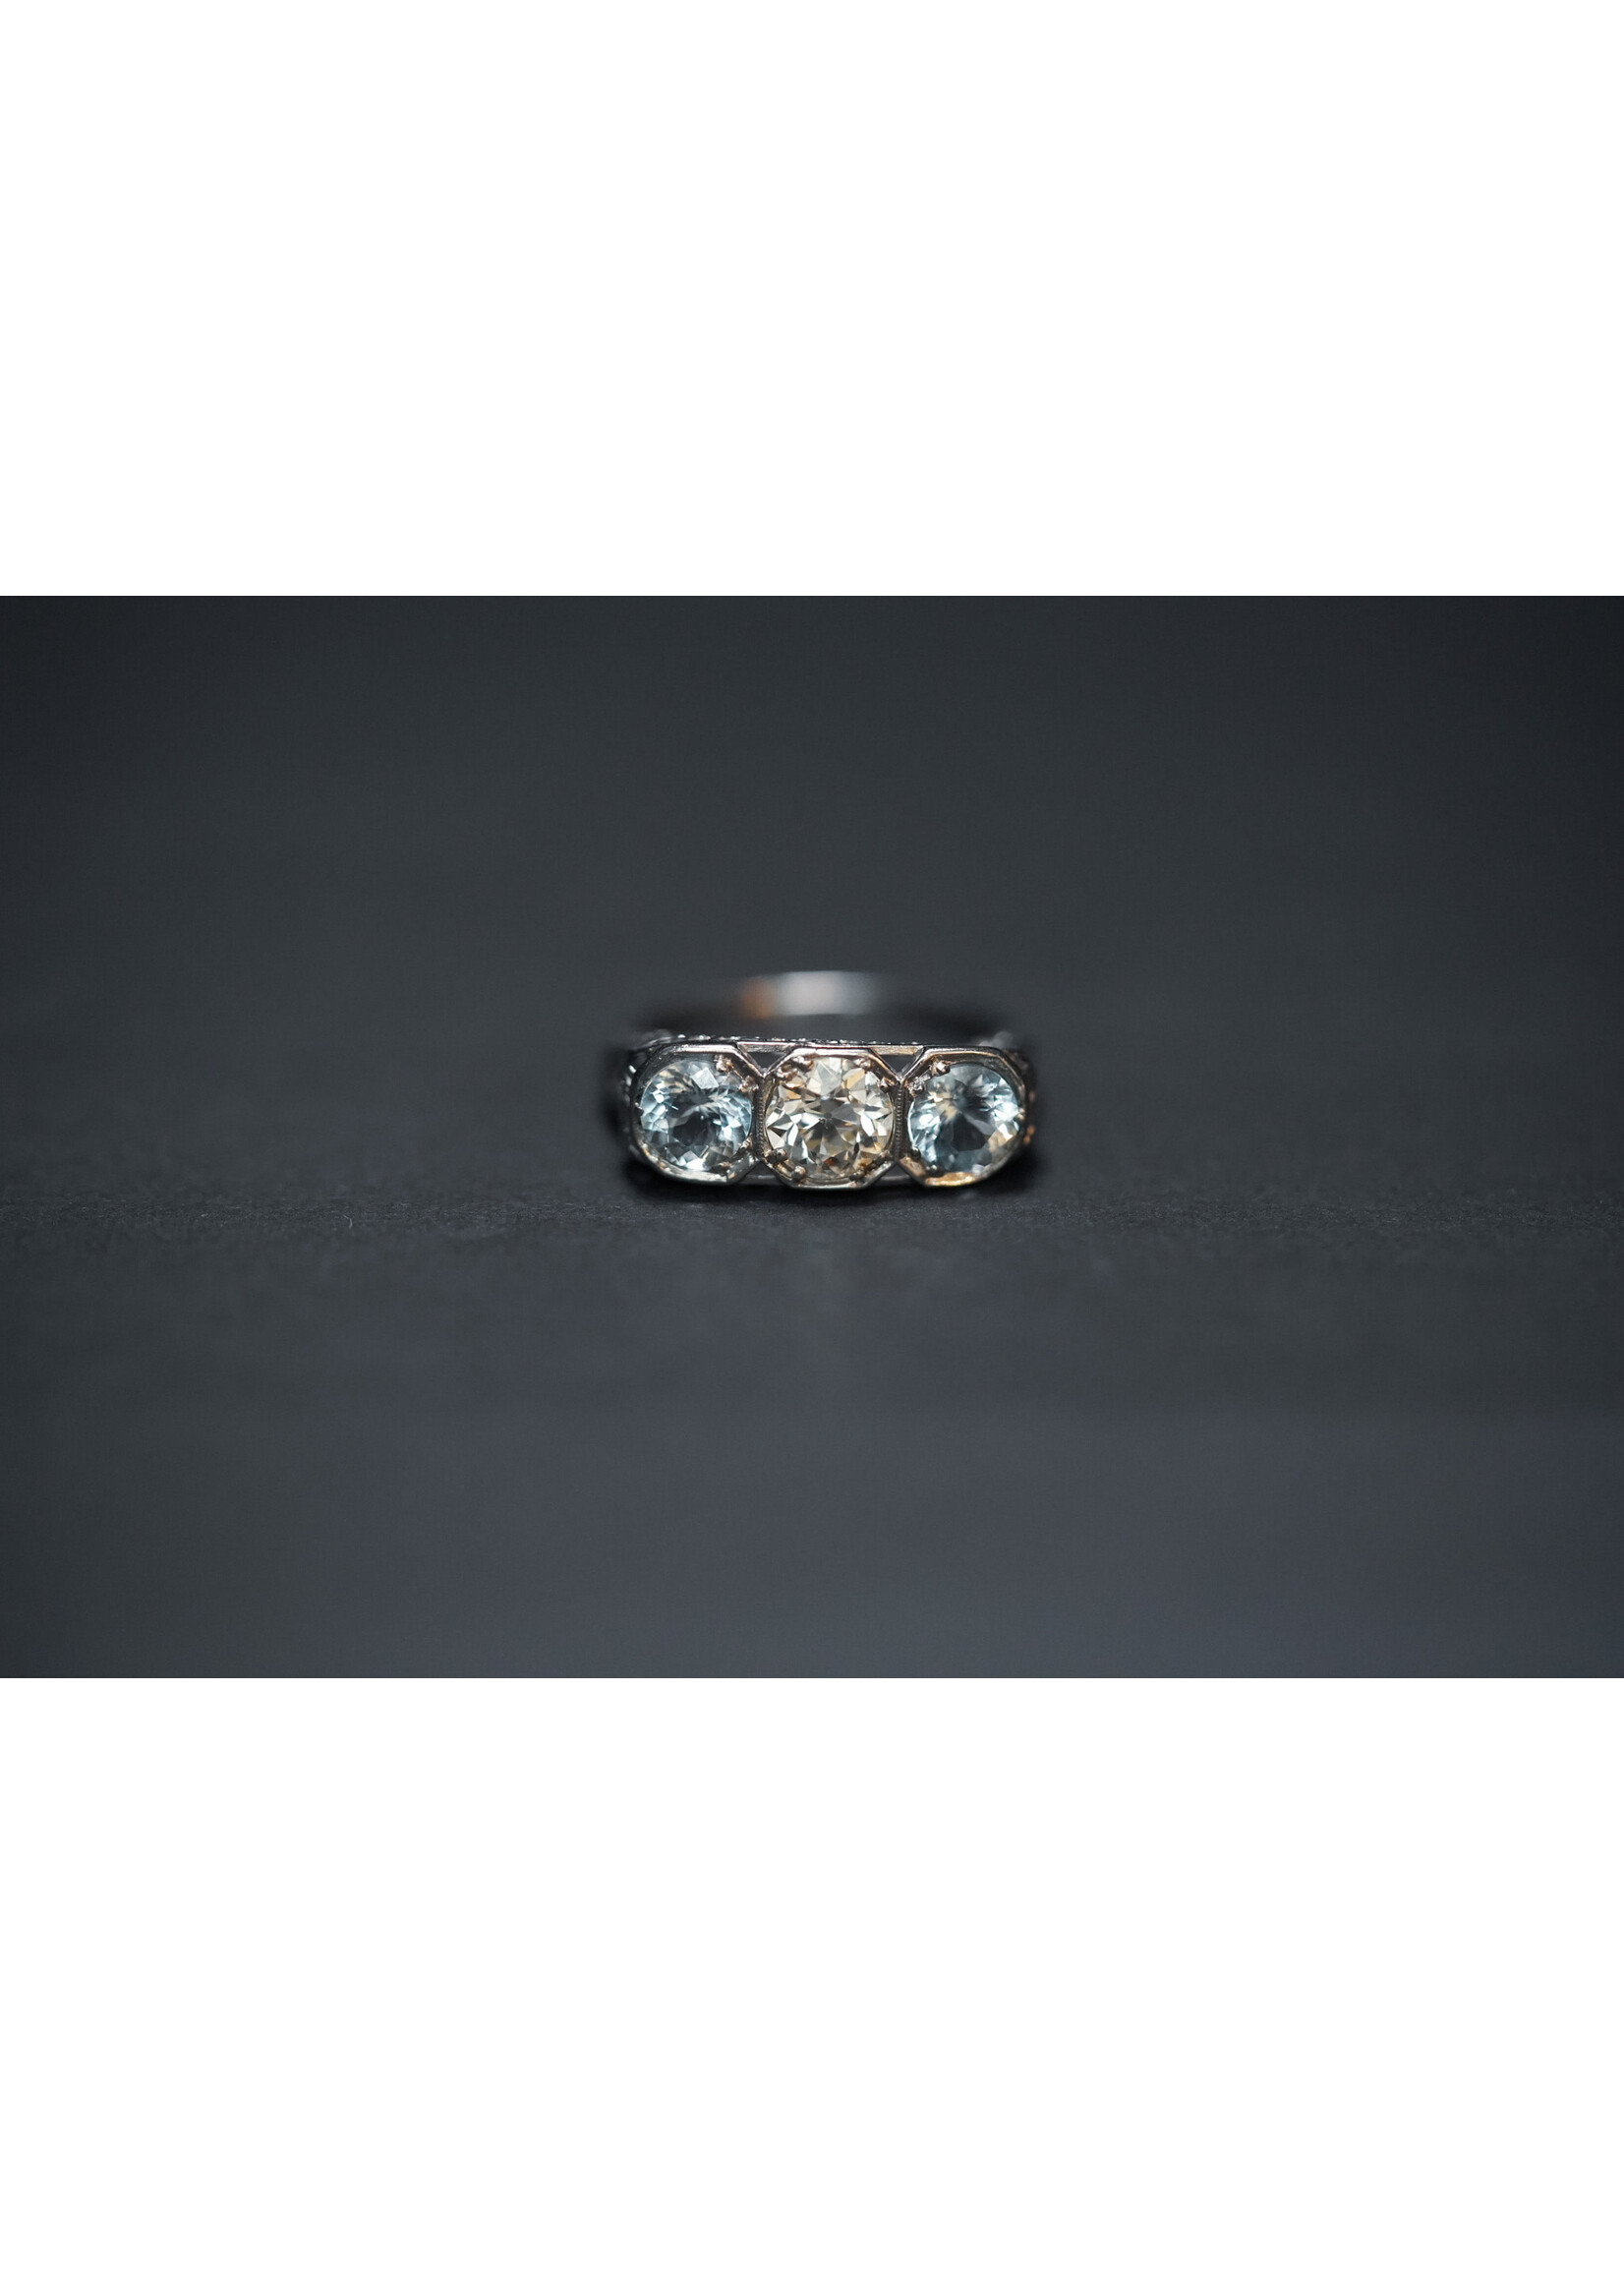 Platinum 5.48g 2.25ctw Diamond & Aquamarine Antique 3-Stone Ring (size 8.5)